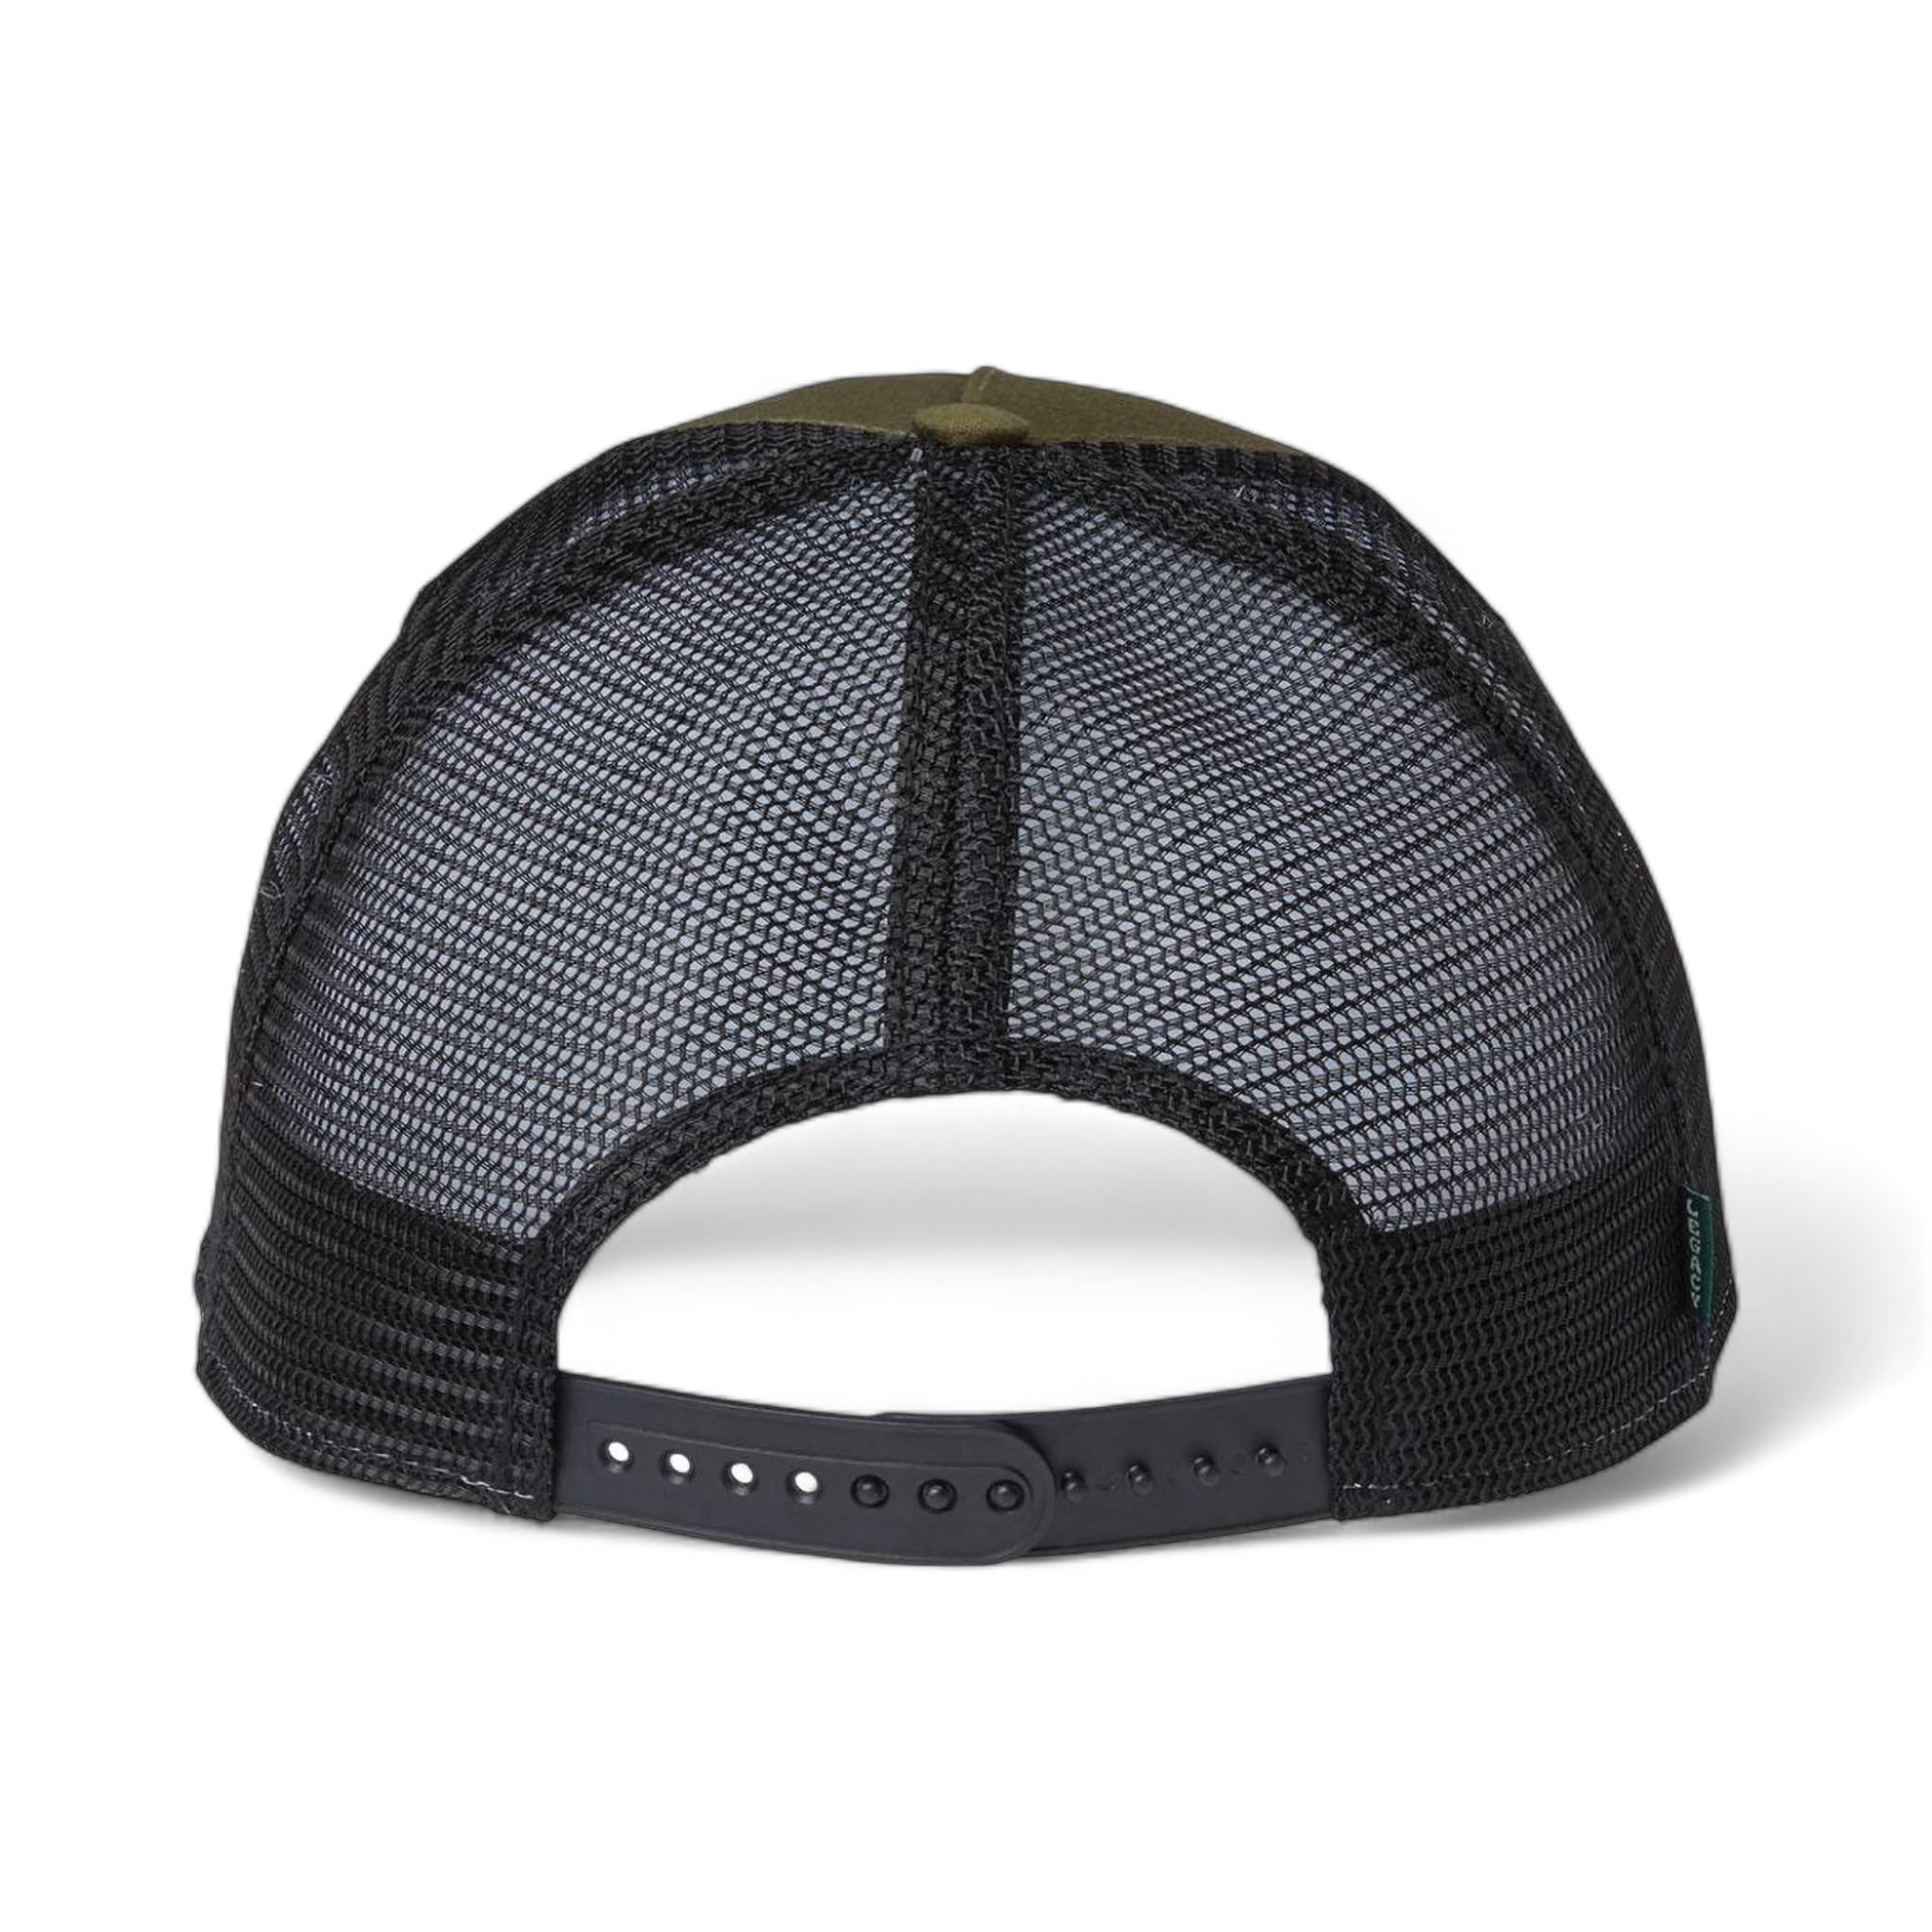 Back view of LEGACY ROADIE custom hat in olive slub and  black